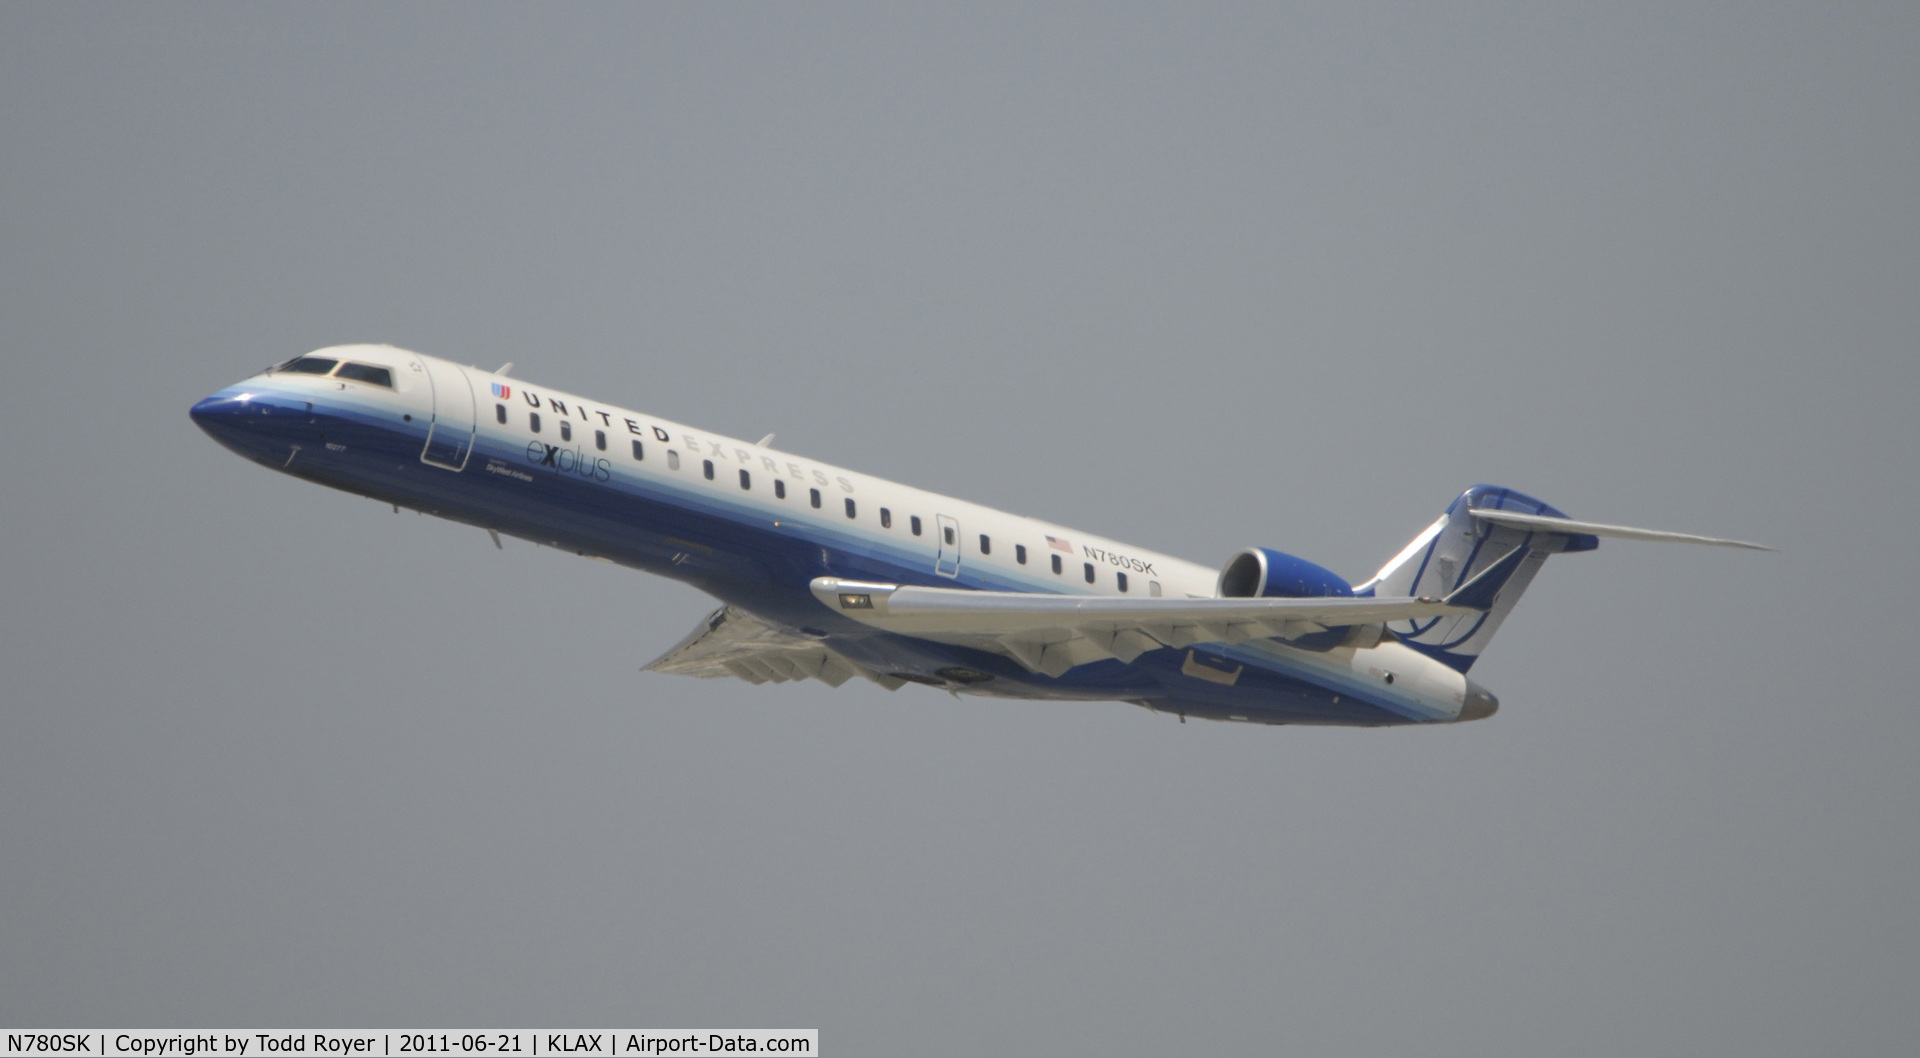 N780SK, 2009 Bombardier CRJ-700 (CL-600-2C10) Regional Jet C/N 10277, Departing LAX